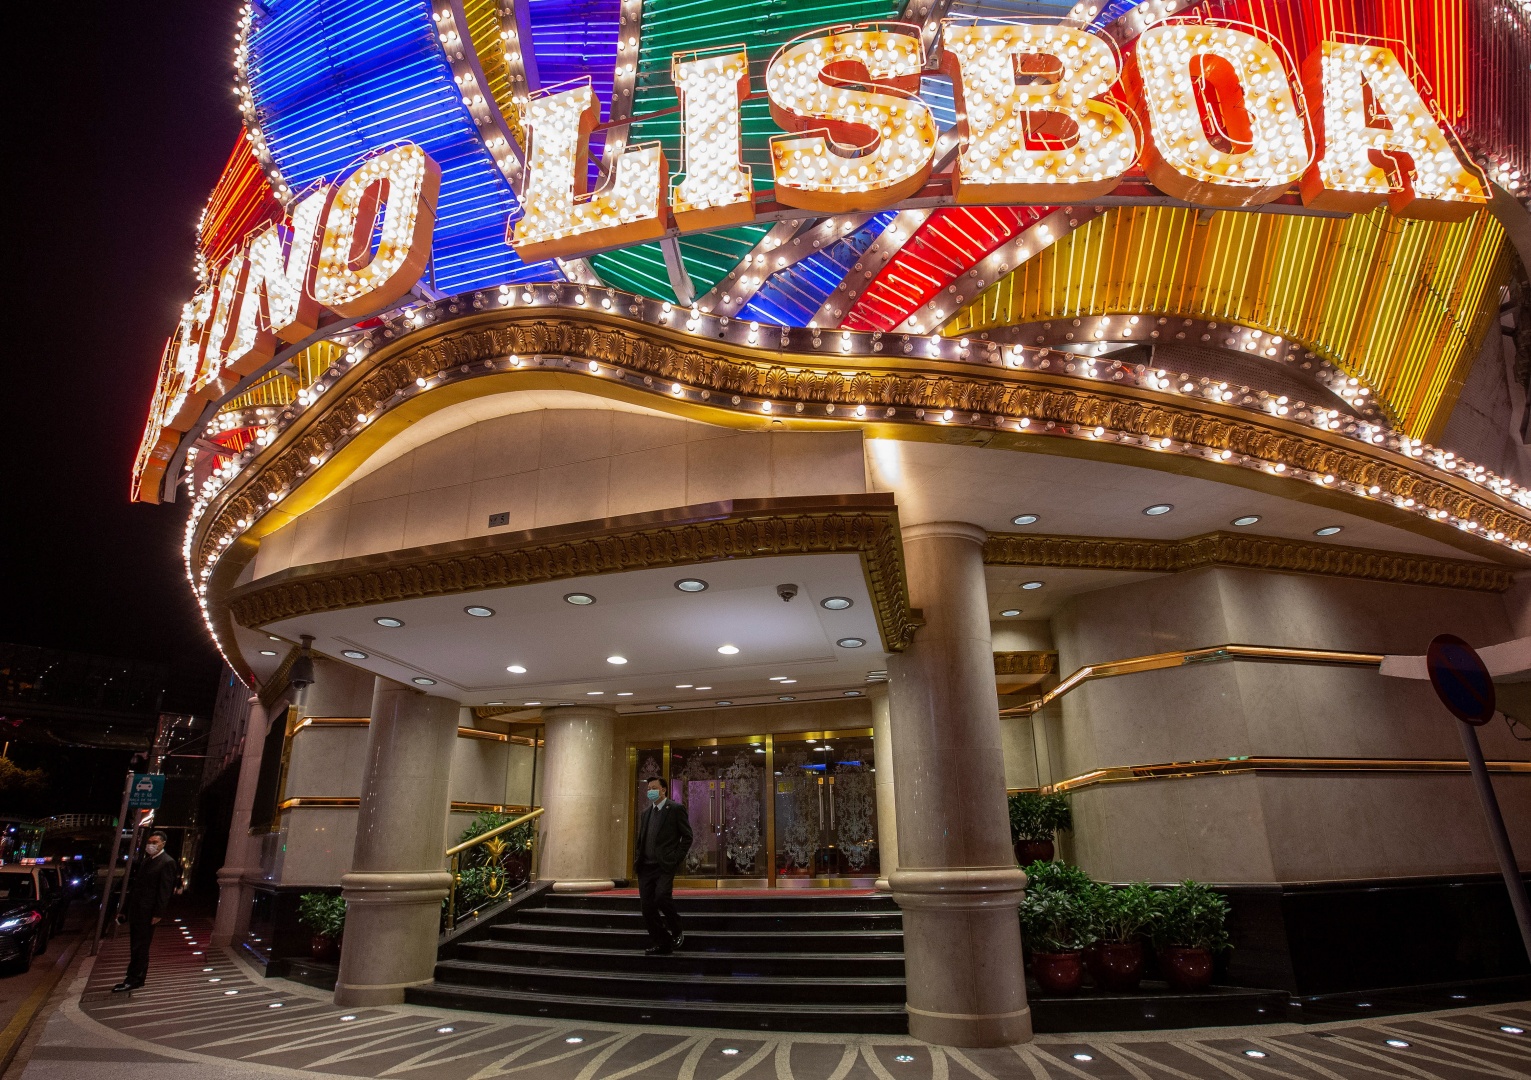 Macau. Como vive a capital mundial dos casinos quando não há jogo